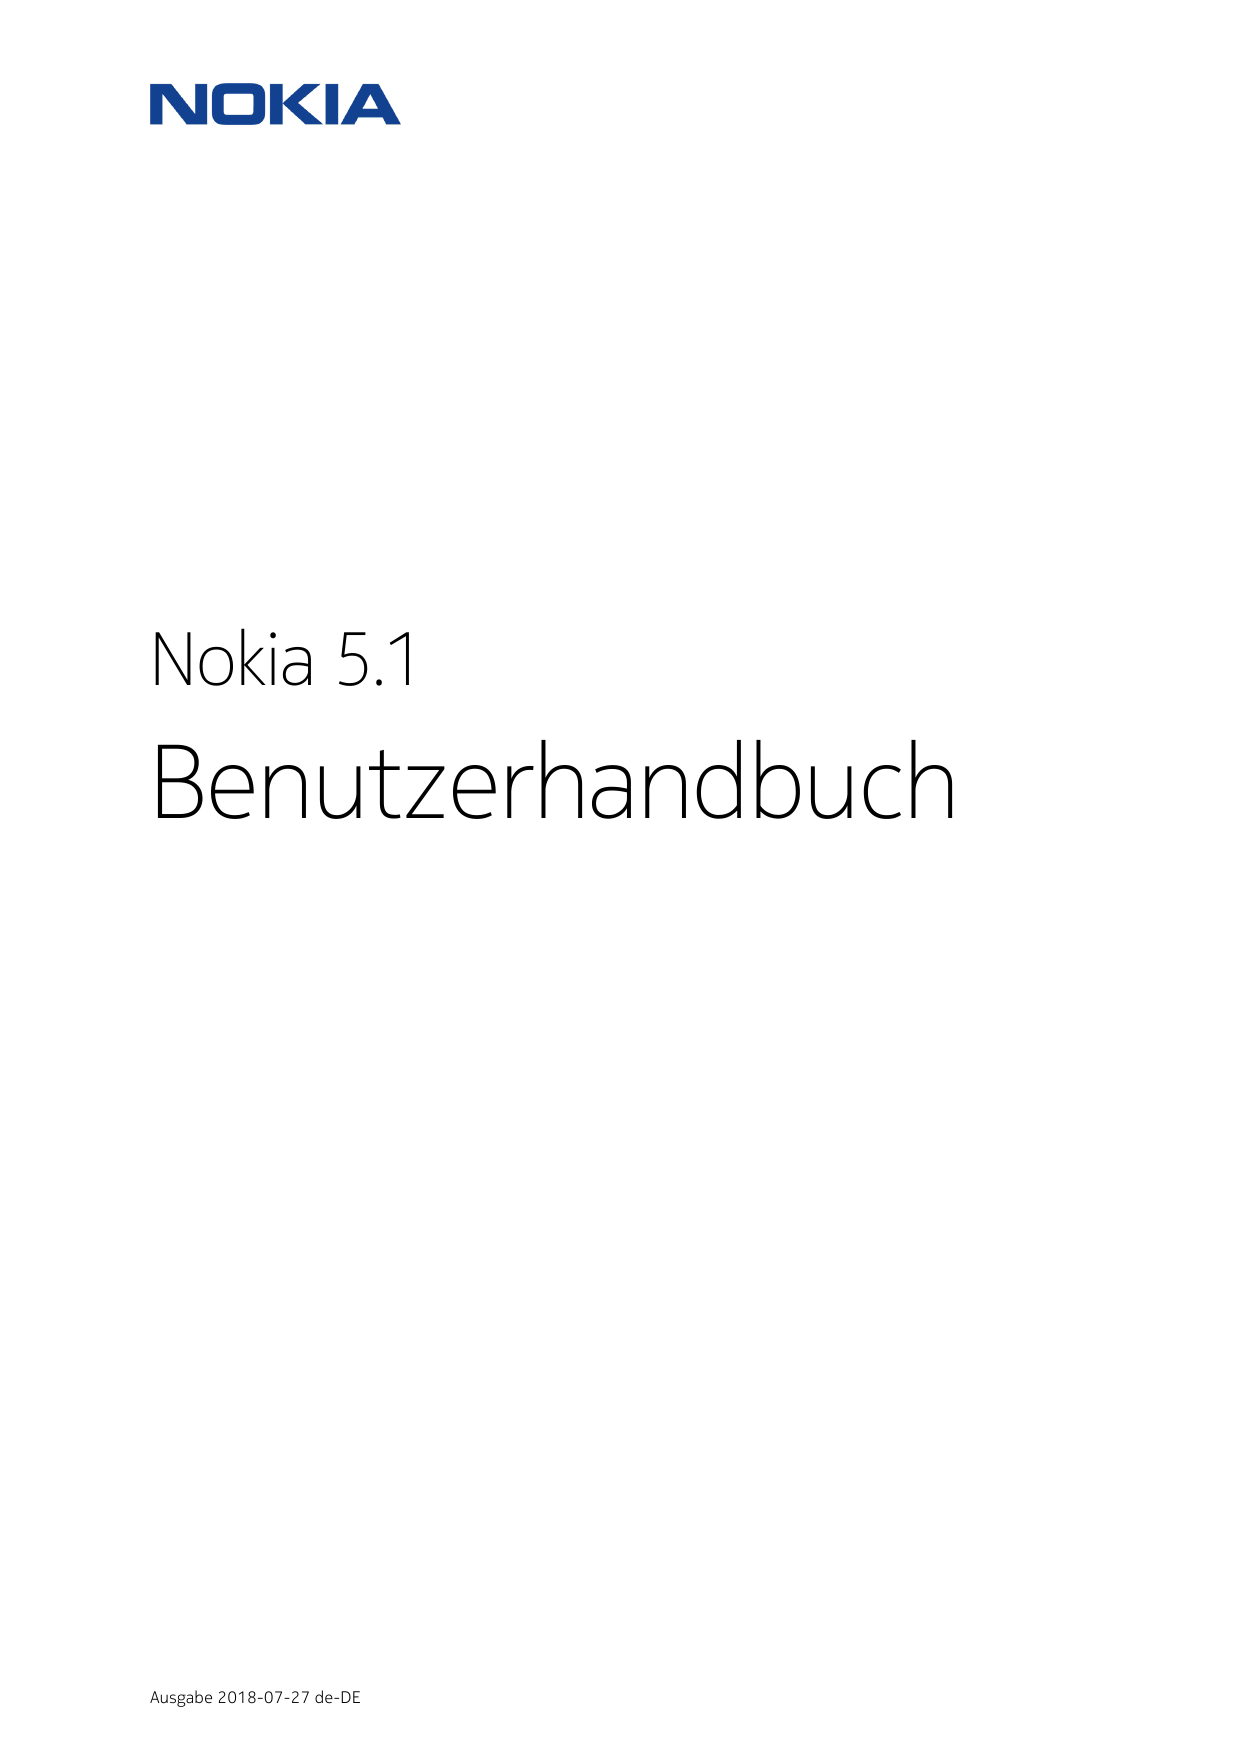 Nokia 5.1BenutzerhandbuchAusgabe 2018-07-27 de-DE